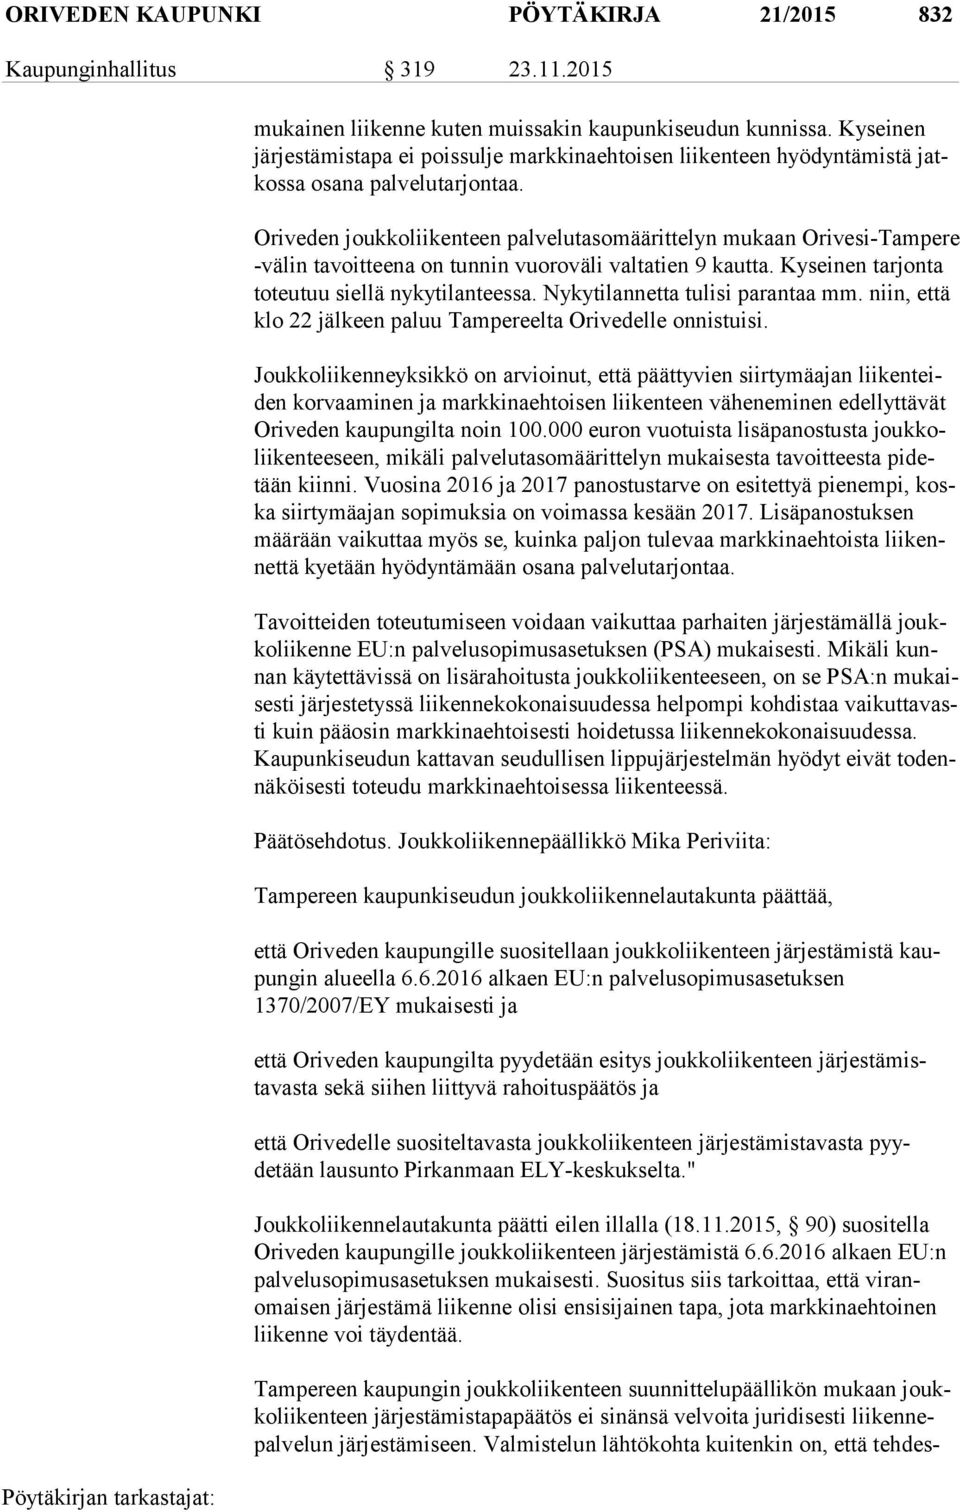 Oriveden joukkoliikenteen palvelutasomäärittelyn mukaan Orivesi-Tampere -vä lin tavoitteena on tunnin vuoroväli valtatien 9 kautta. Kyseinen tarjonta to teu tuu siellä nykytilanteessa.